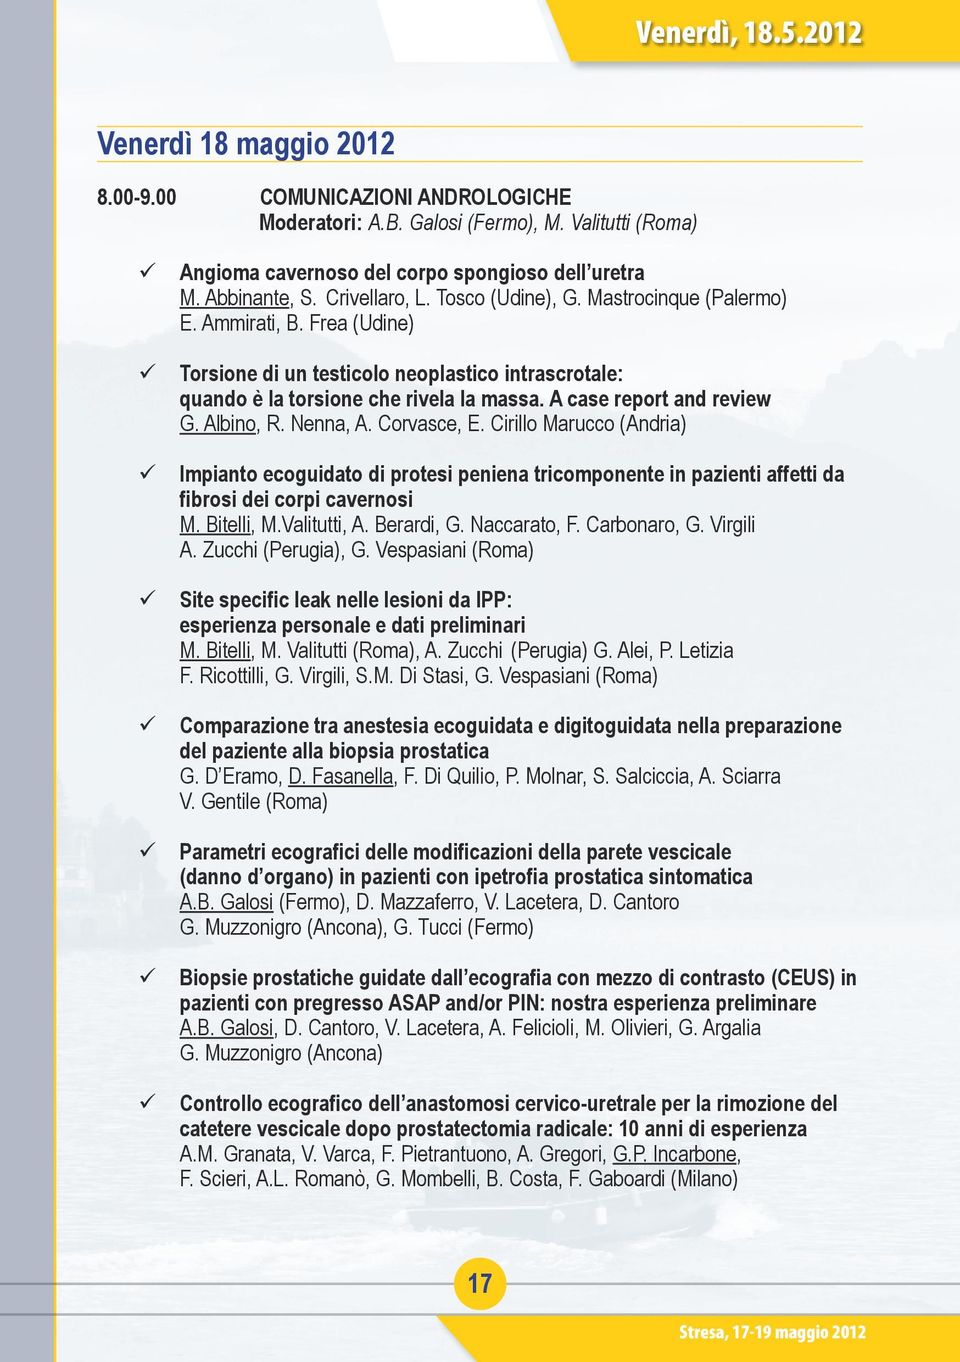 A case report and review G. Albino, R. Nenna, A. Corvasce, E. Cirillo Marucco (Andria) Impianto ecoguidato di protesi peniena tricomponente in pazienti affetti da fibrosi dei corpi cavernosi M.